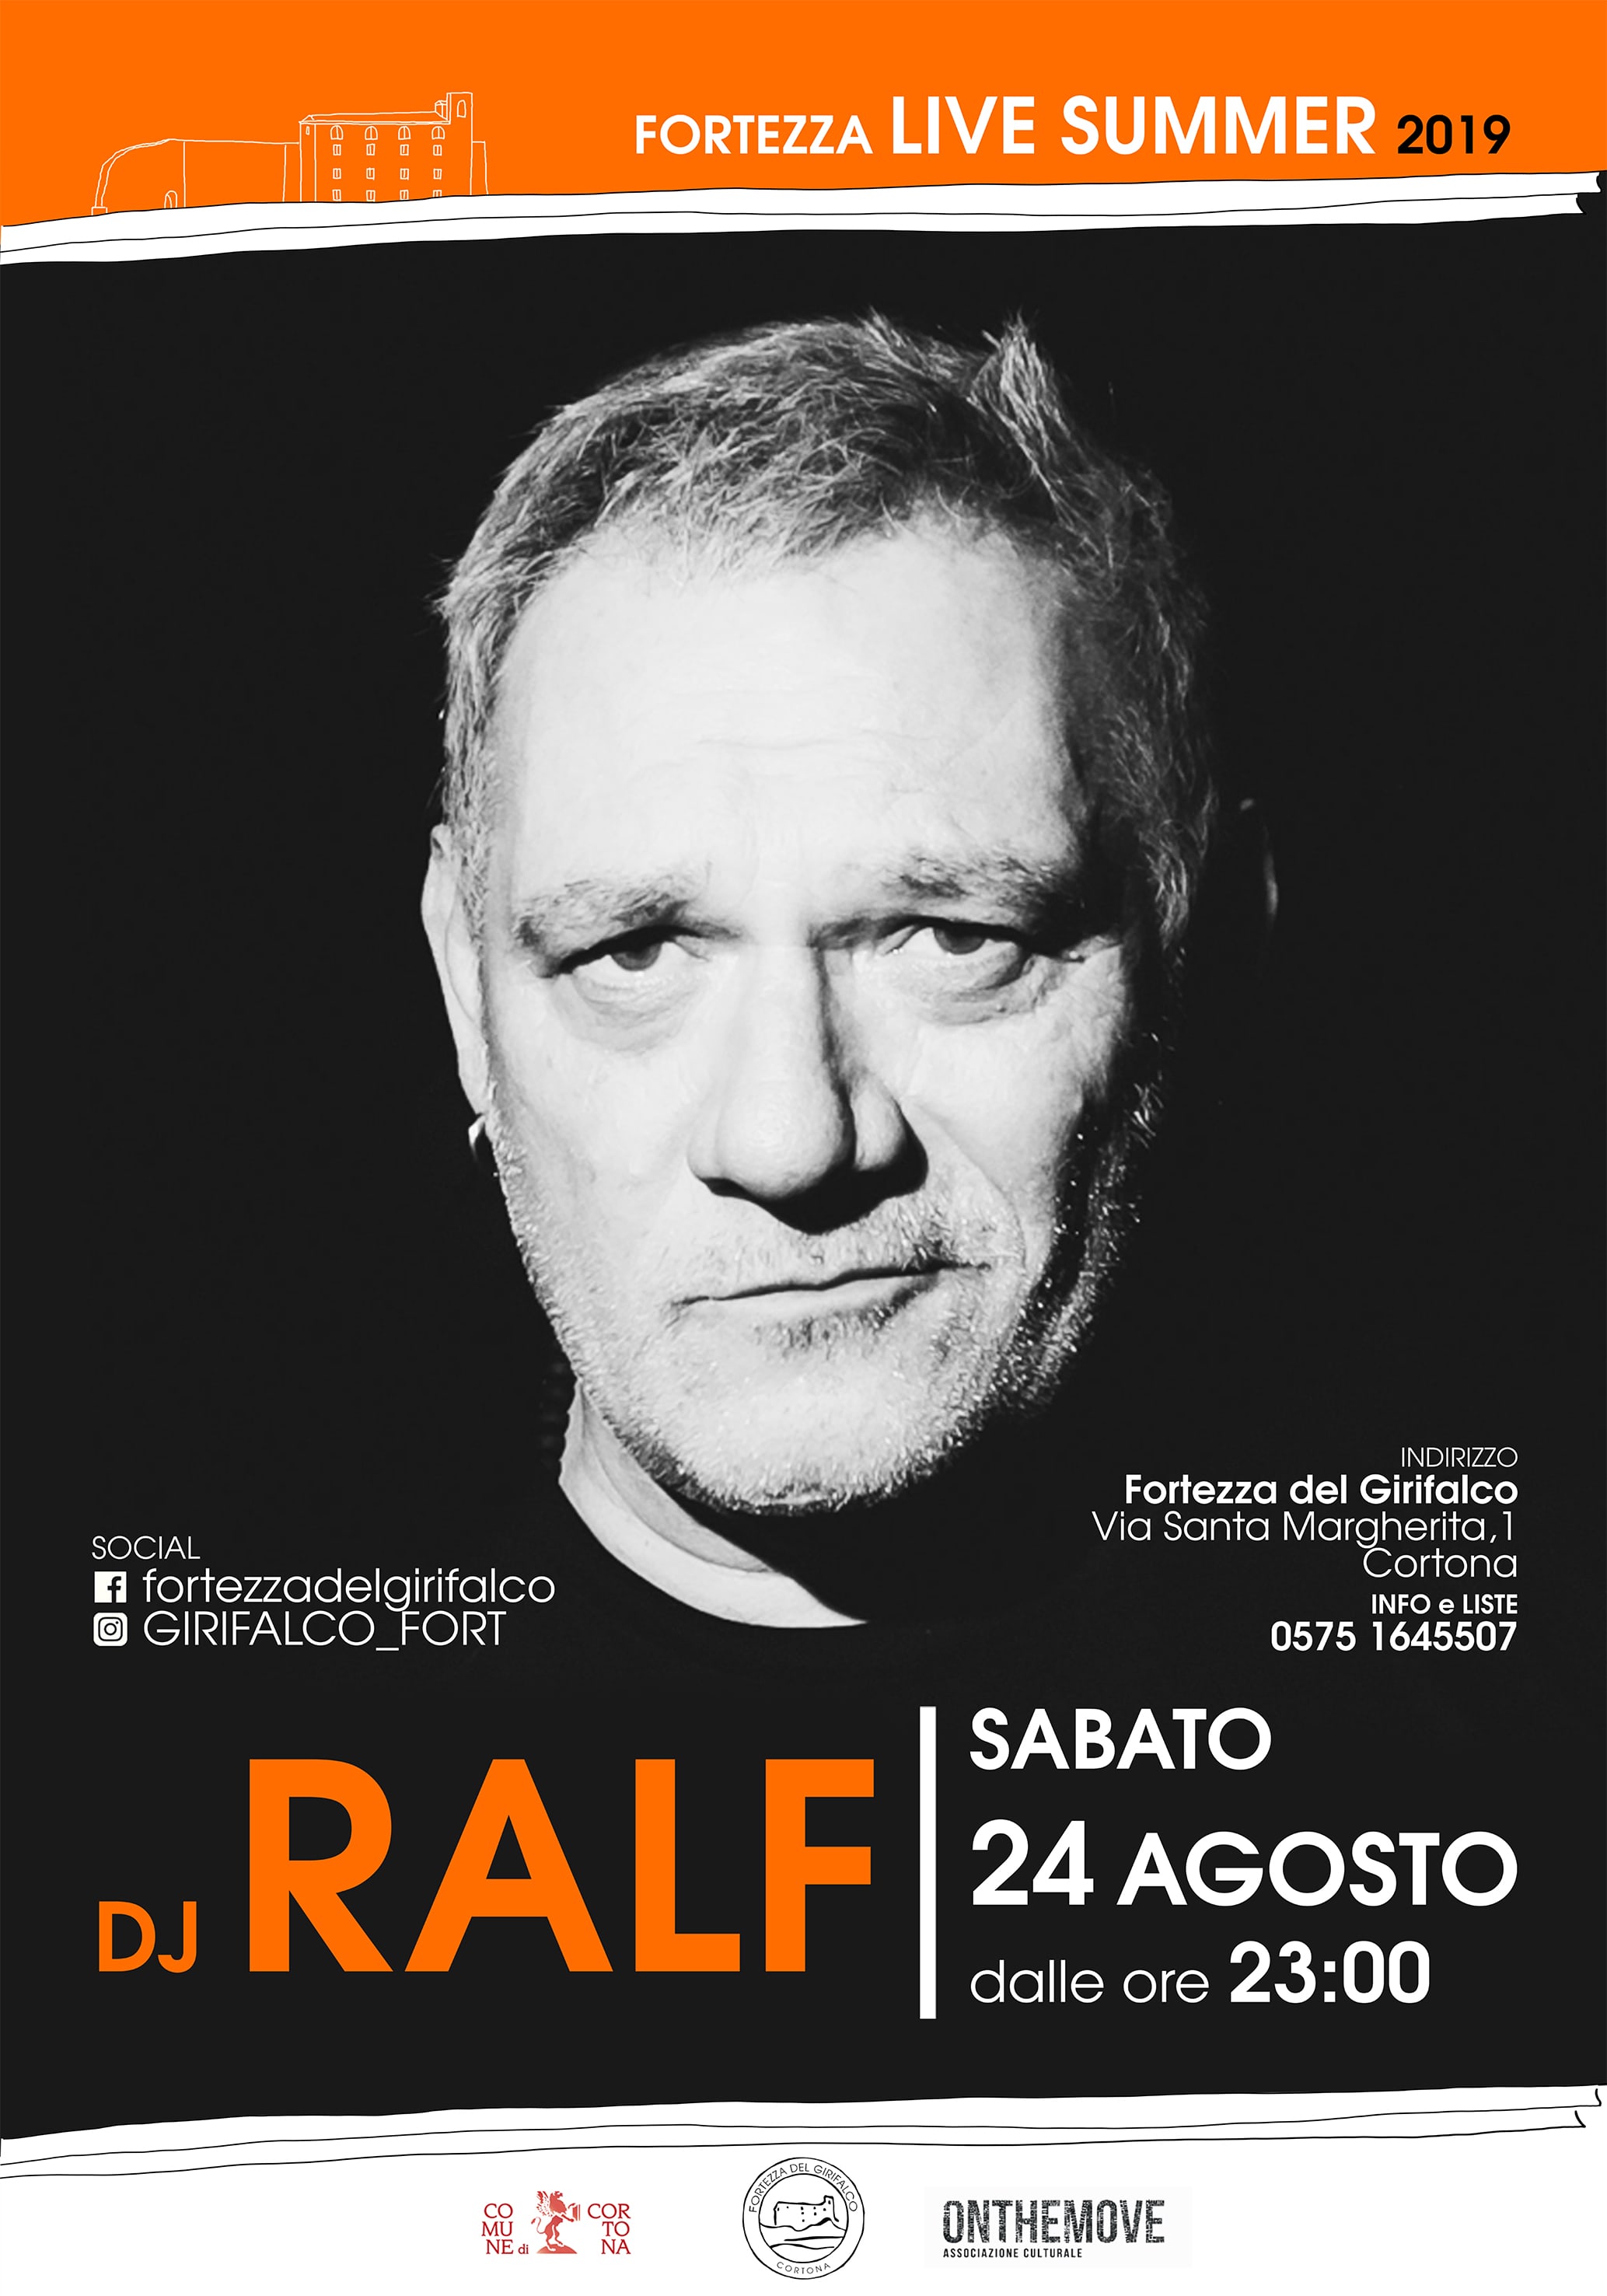 Dj Ralf per il Summer Live della Fortezza di Cortona: #3